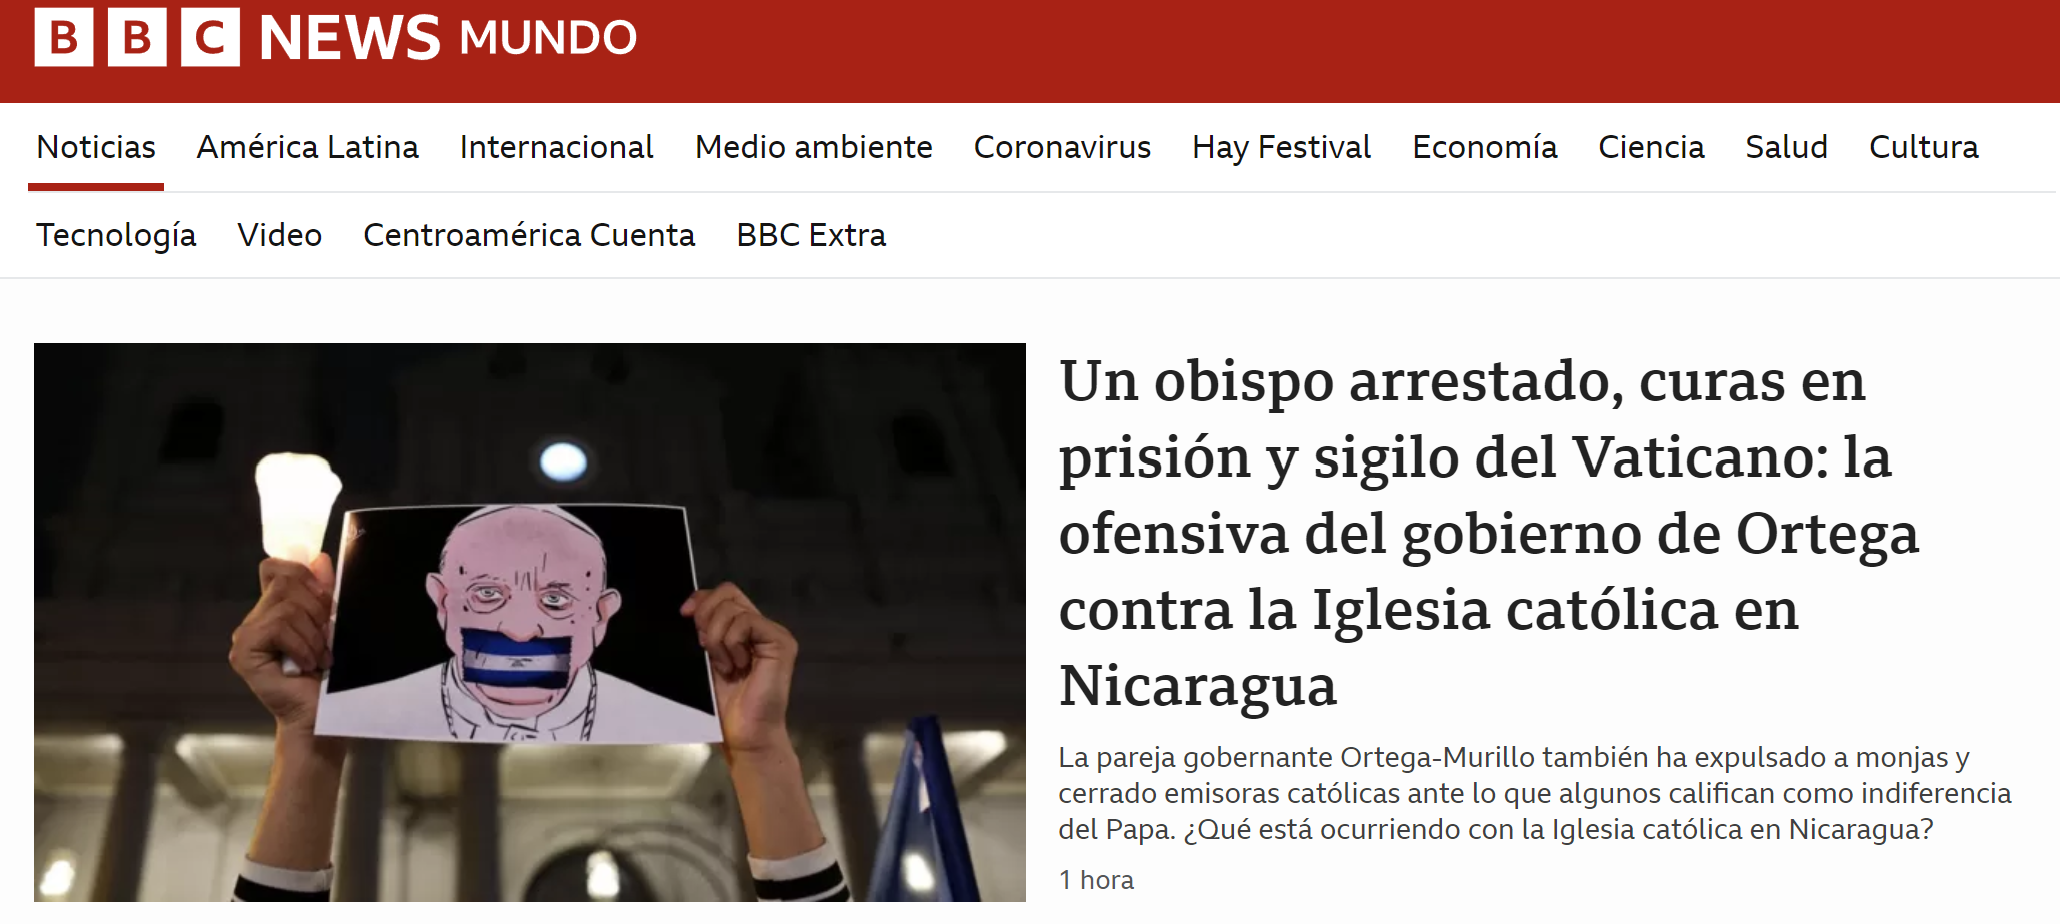 Newspaper in Spanish: BBC News Mundo